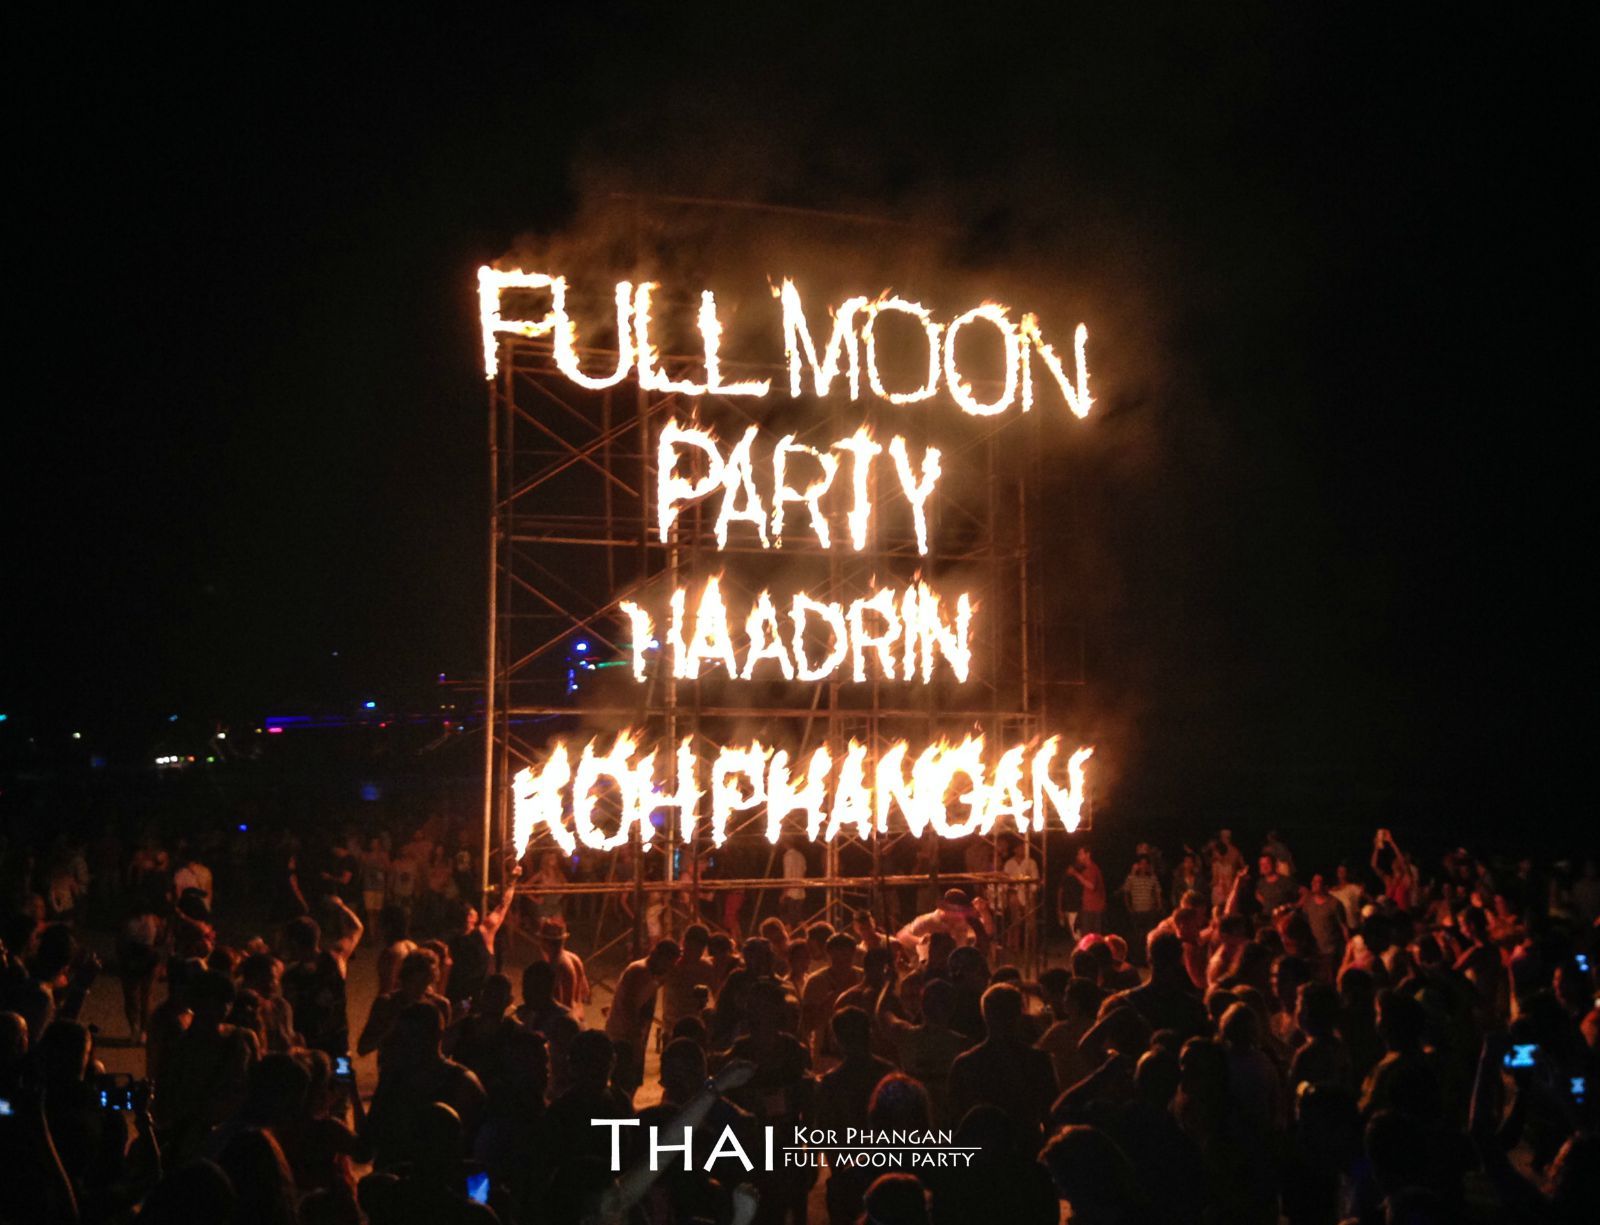 我的单身趴～ Full moon party@Koh Phangan